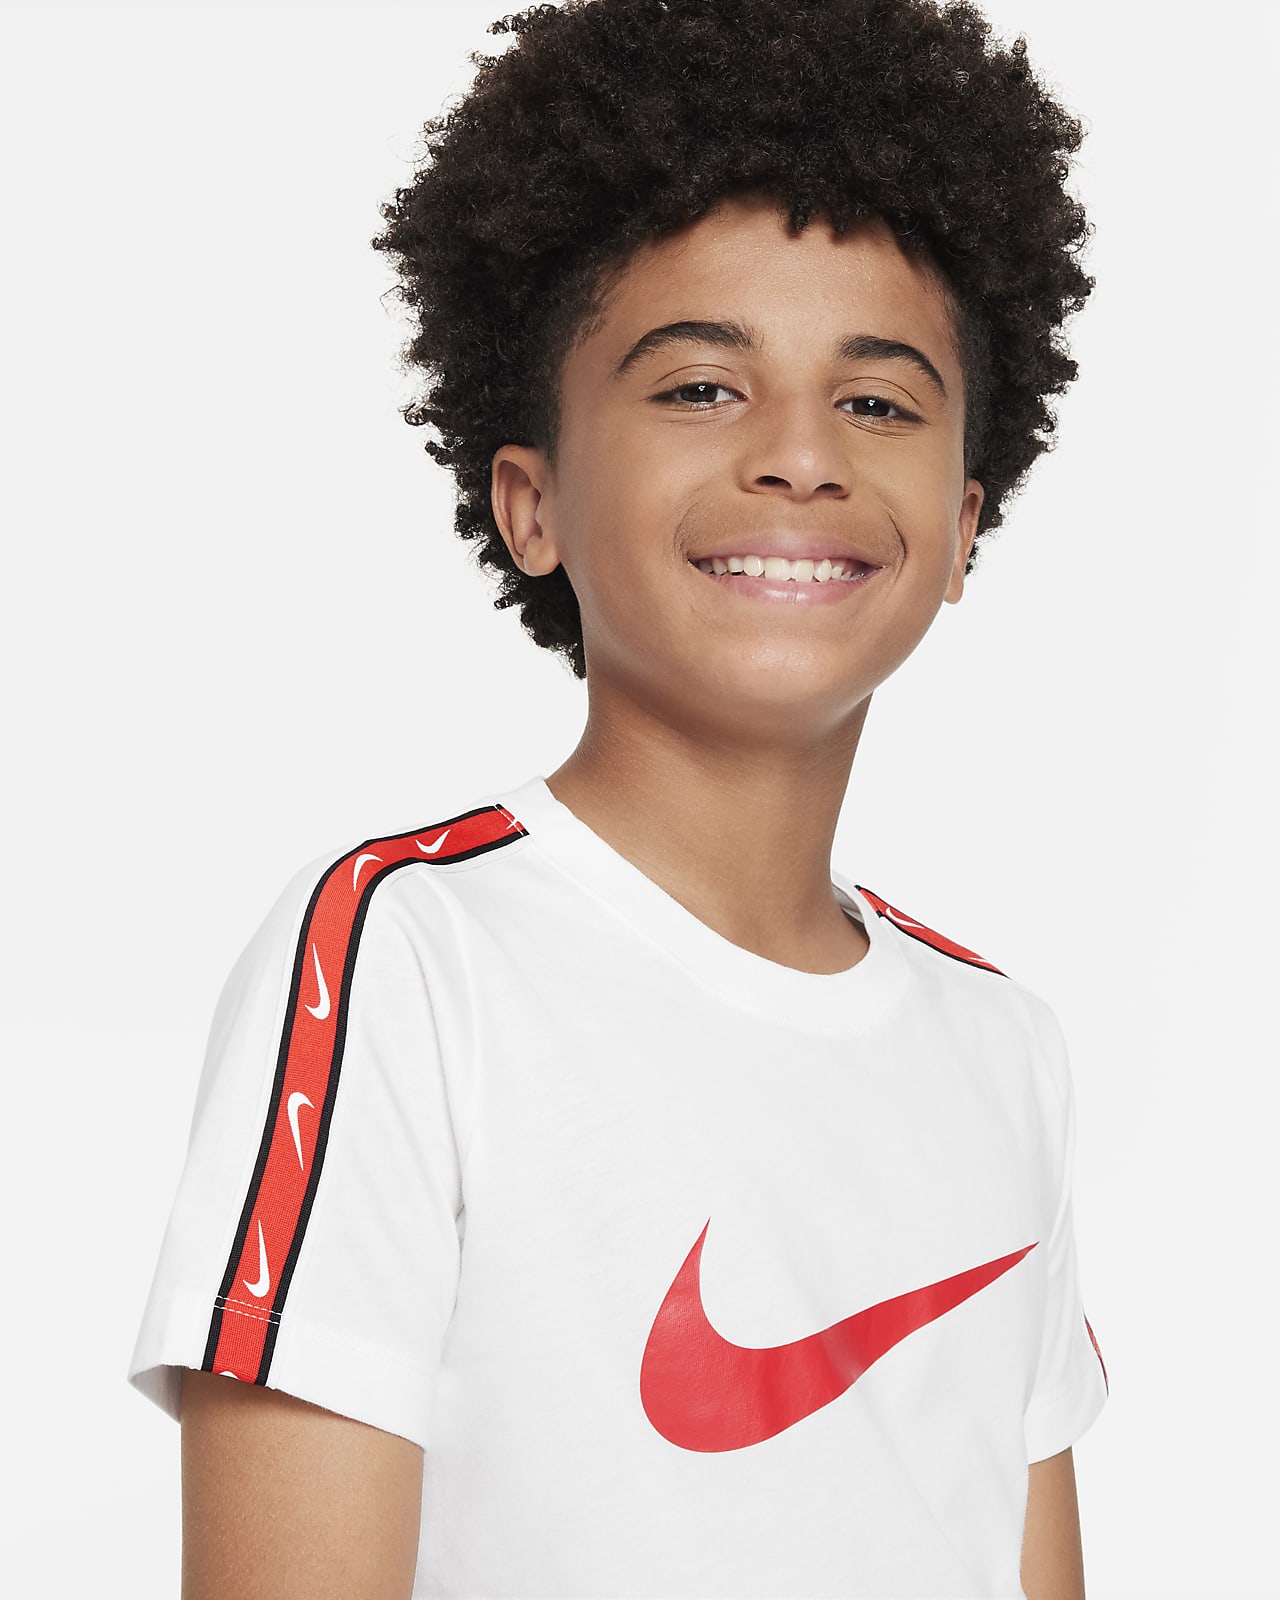 Commande T shirt Nike enfants sur SNIPES